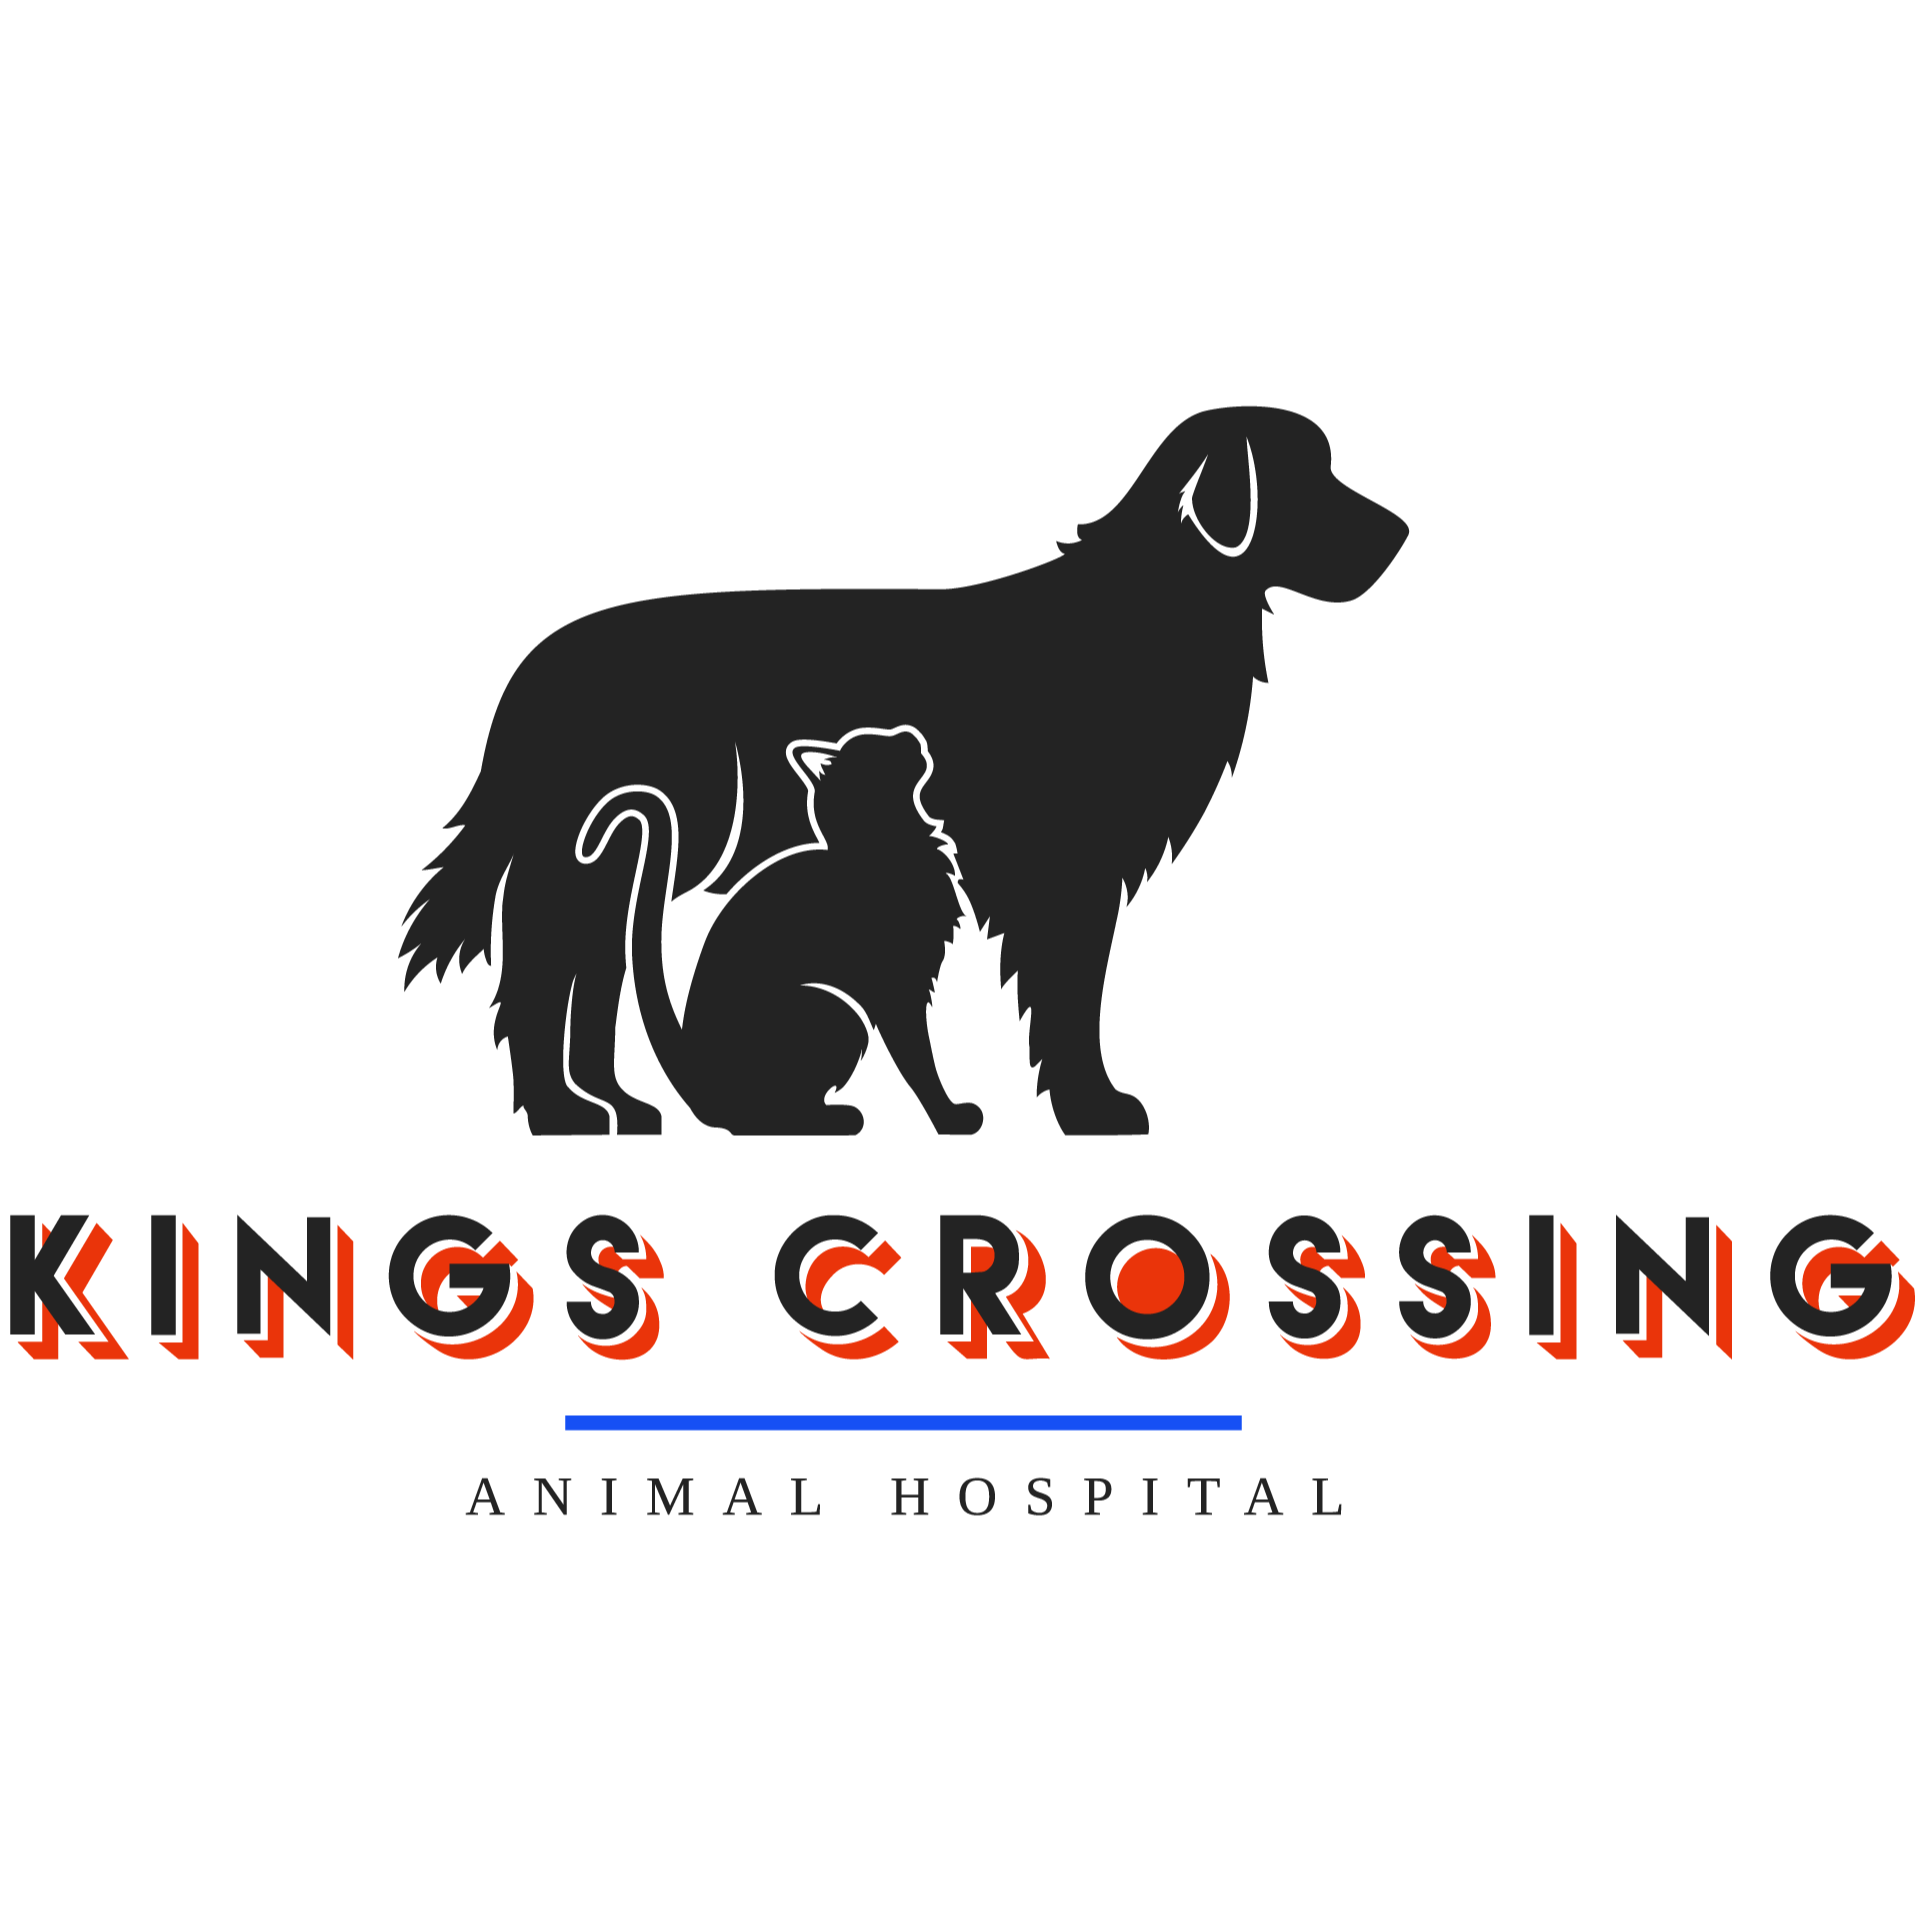 Kings Crossing Animal Hospital